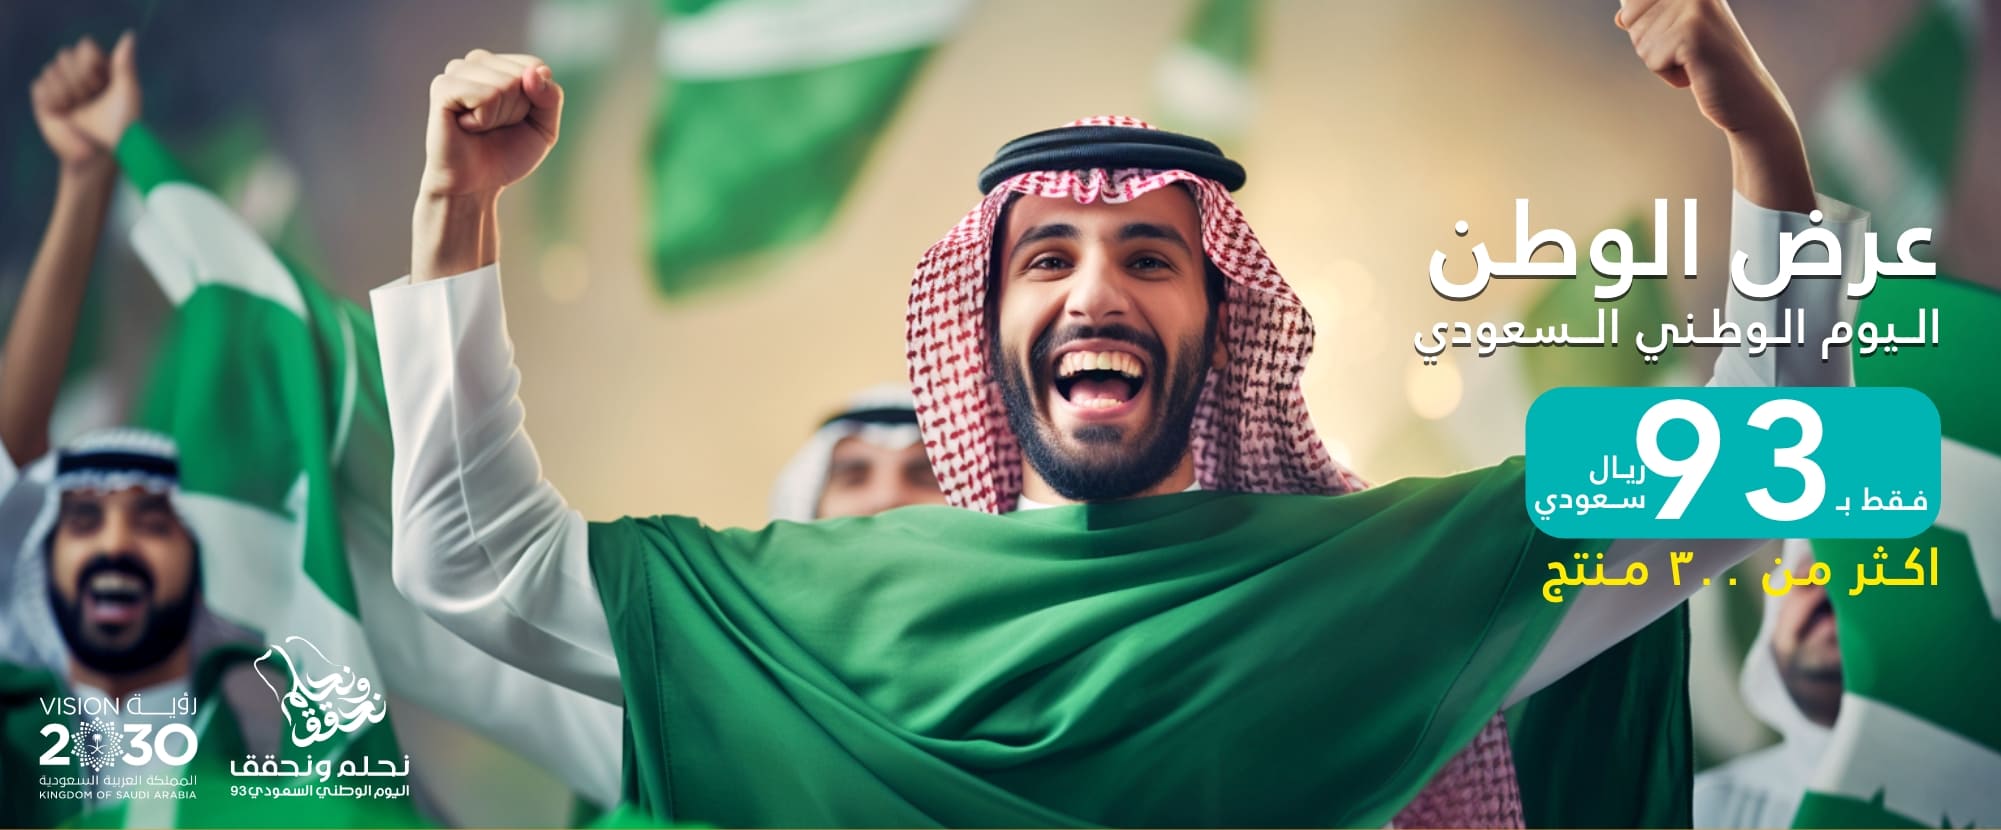 عروض اليوم الوطني السعودي ٩٣